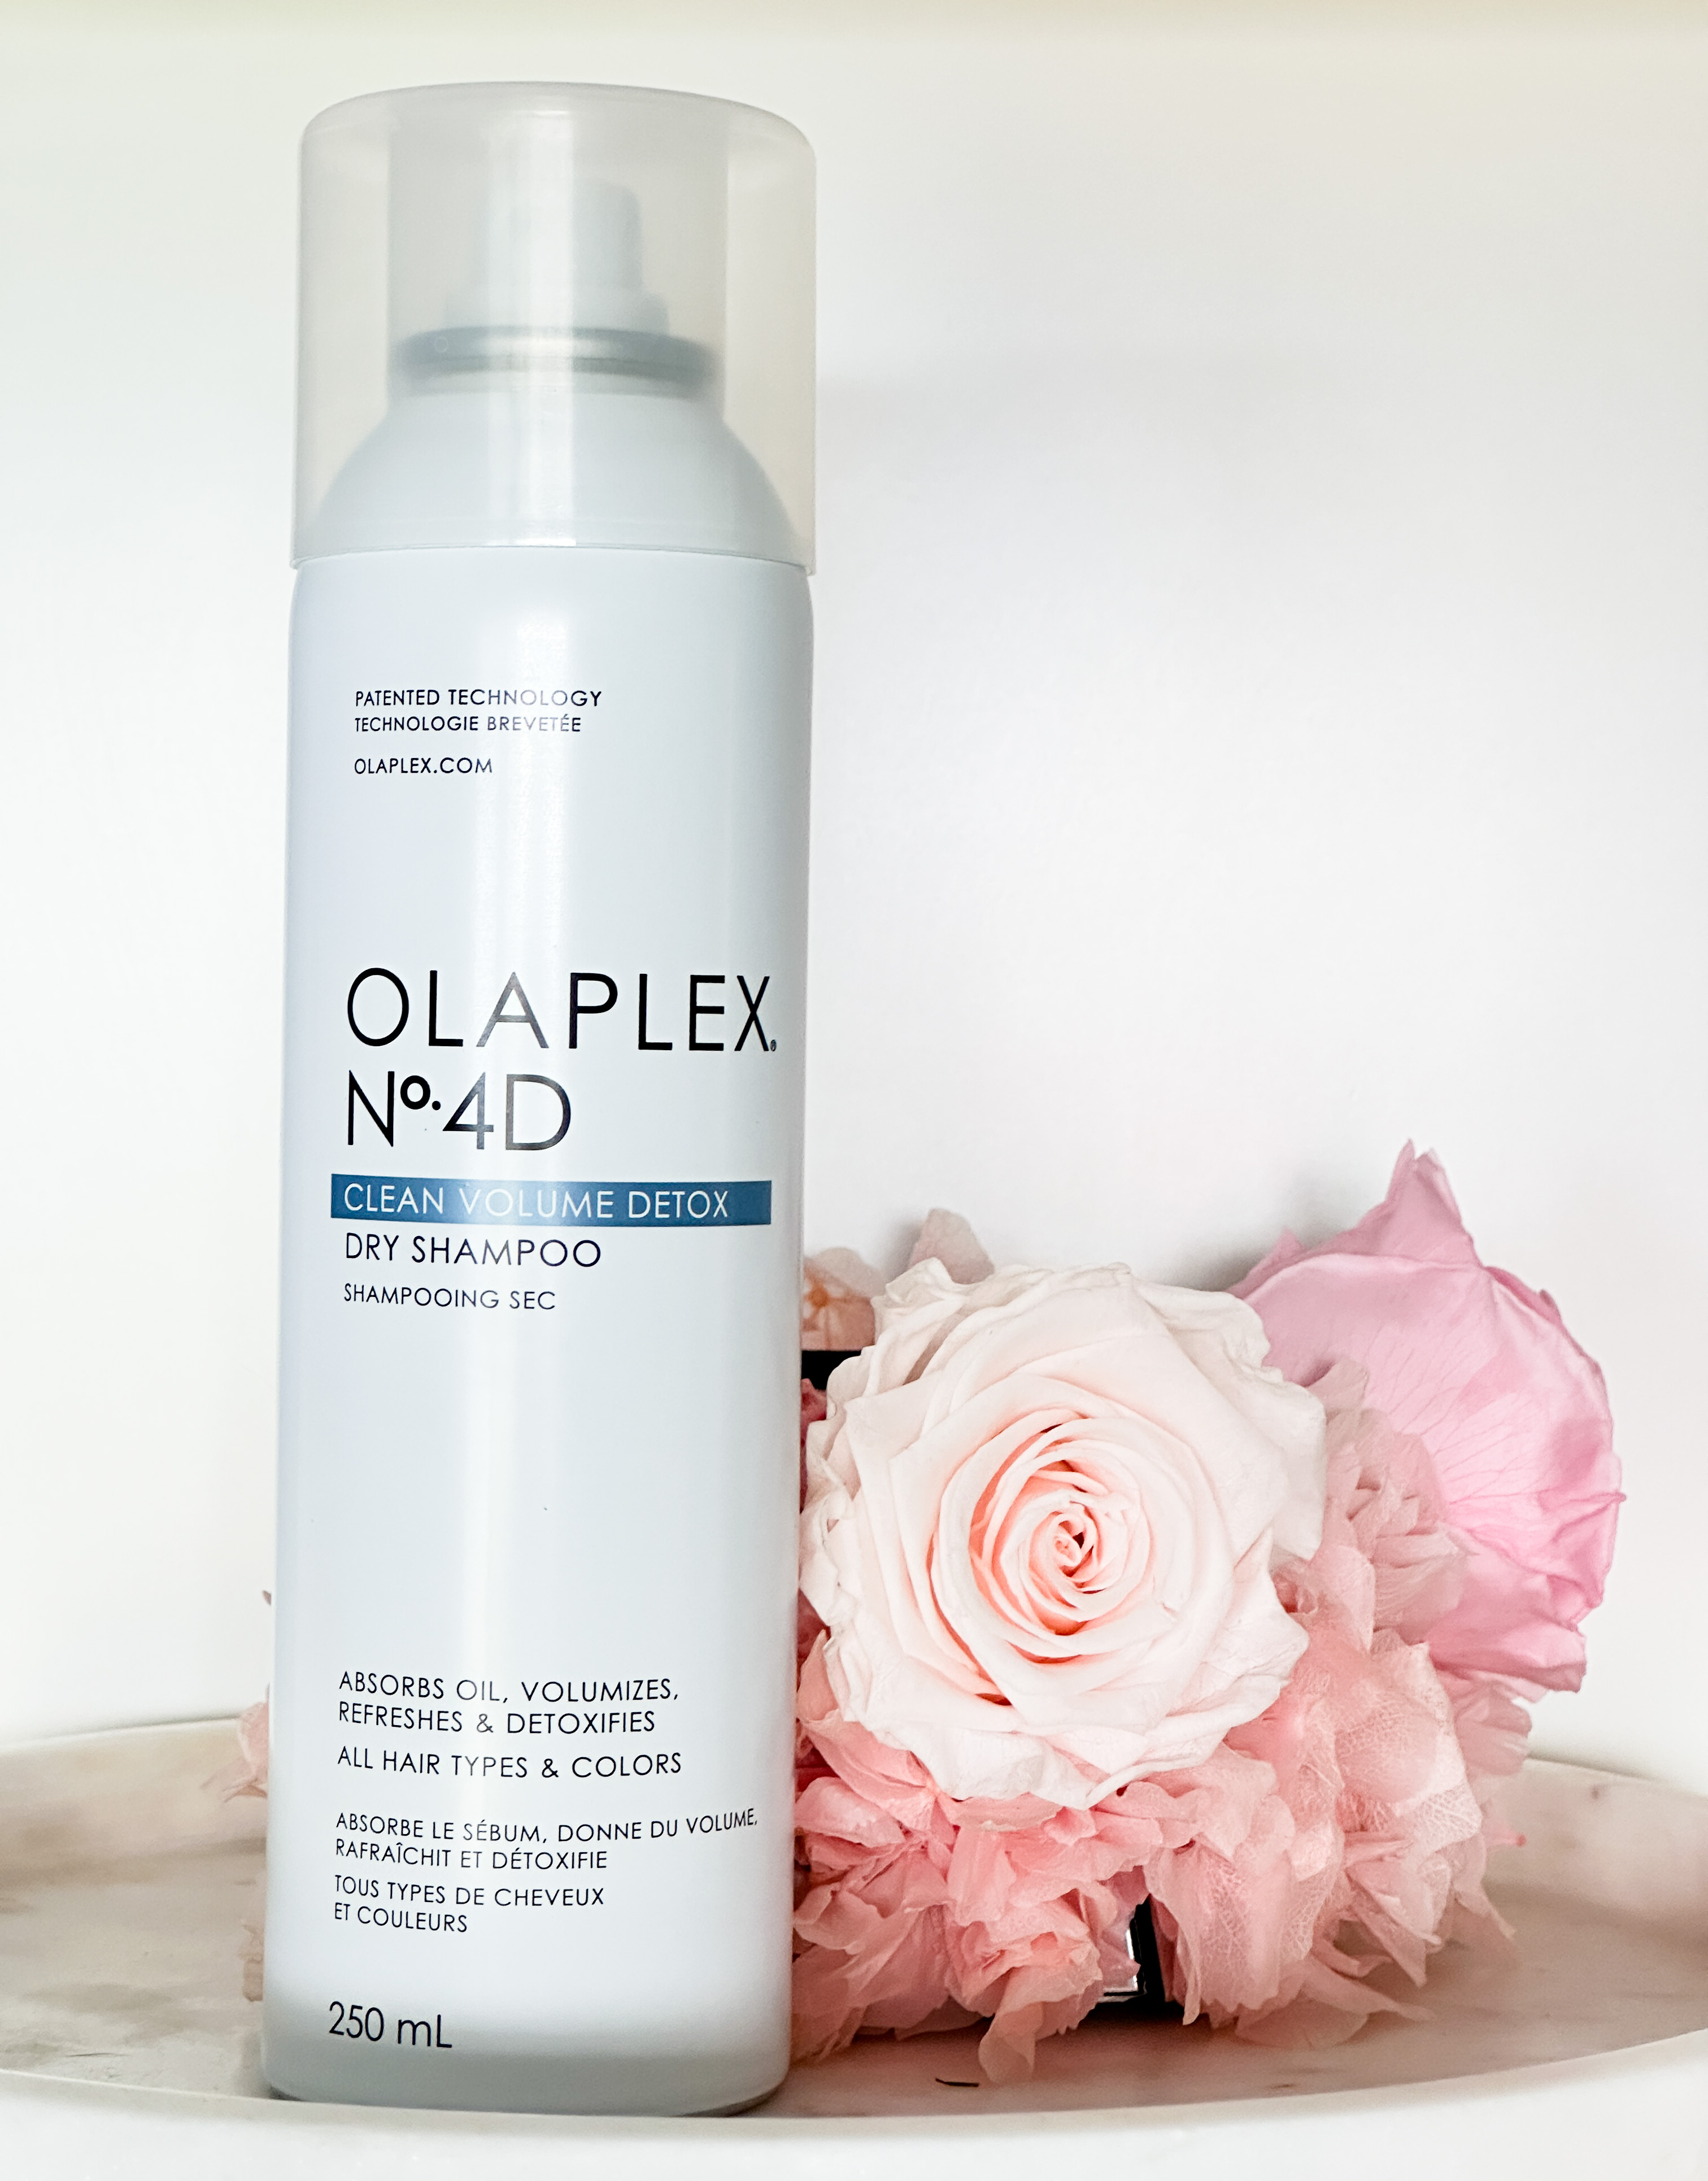 Is the Olaplex Dry Shampoo Worth The Hype?